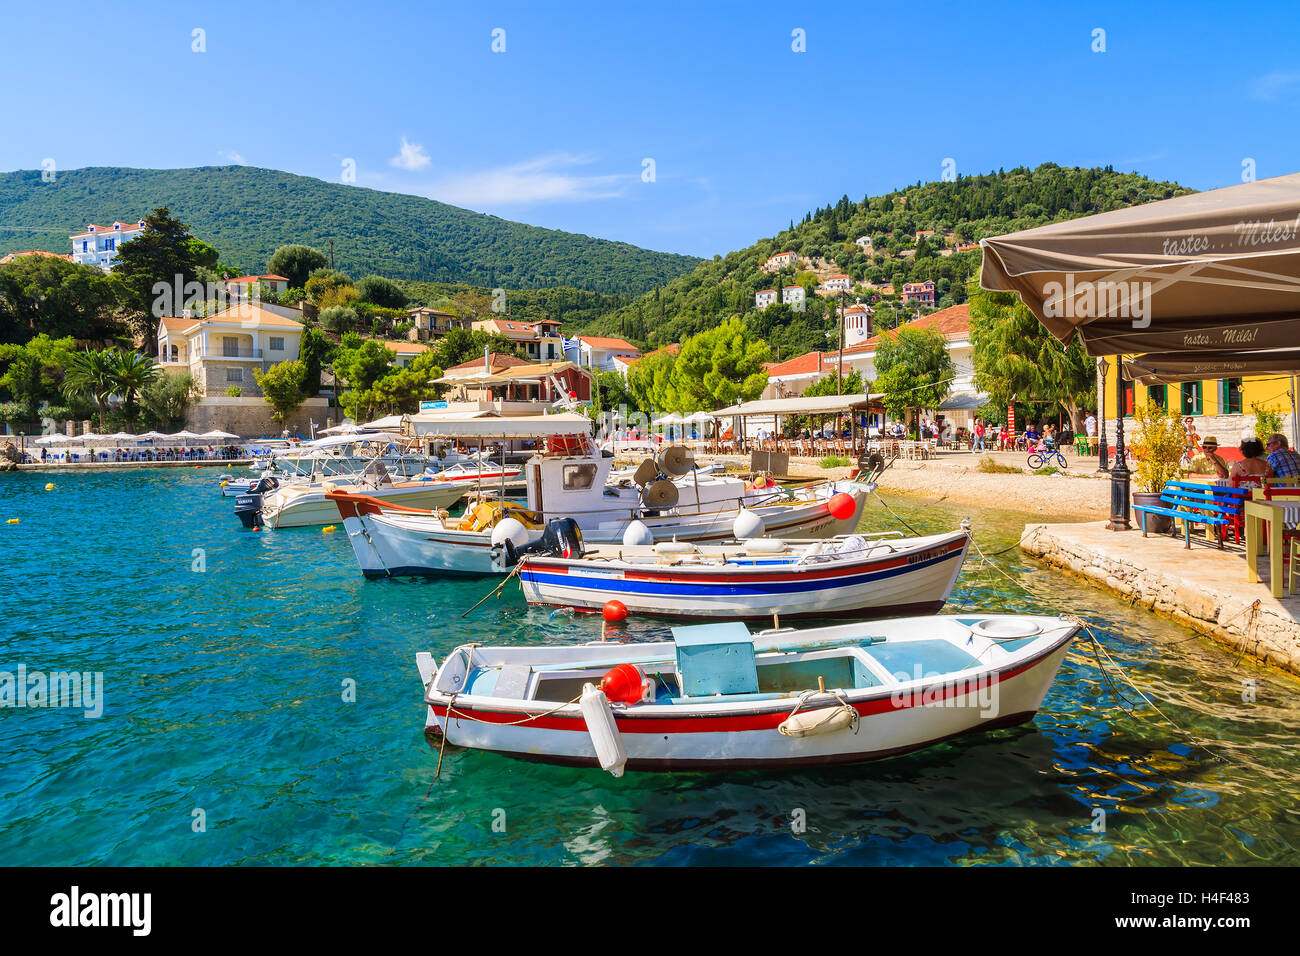 KIONI PORTA, Itaca isola - Sep 19, 2014: colorate barche da pesca nel porto di Kioni. La Grecia è molto popolare meta di vacanza in Europa. Foto Stock